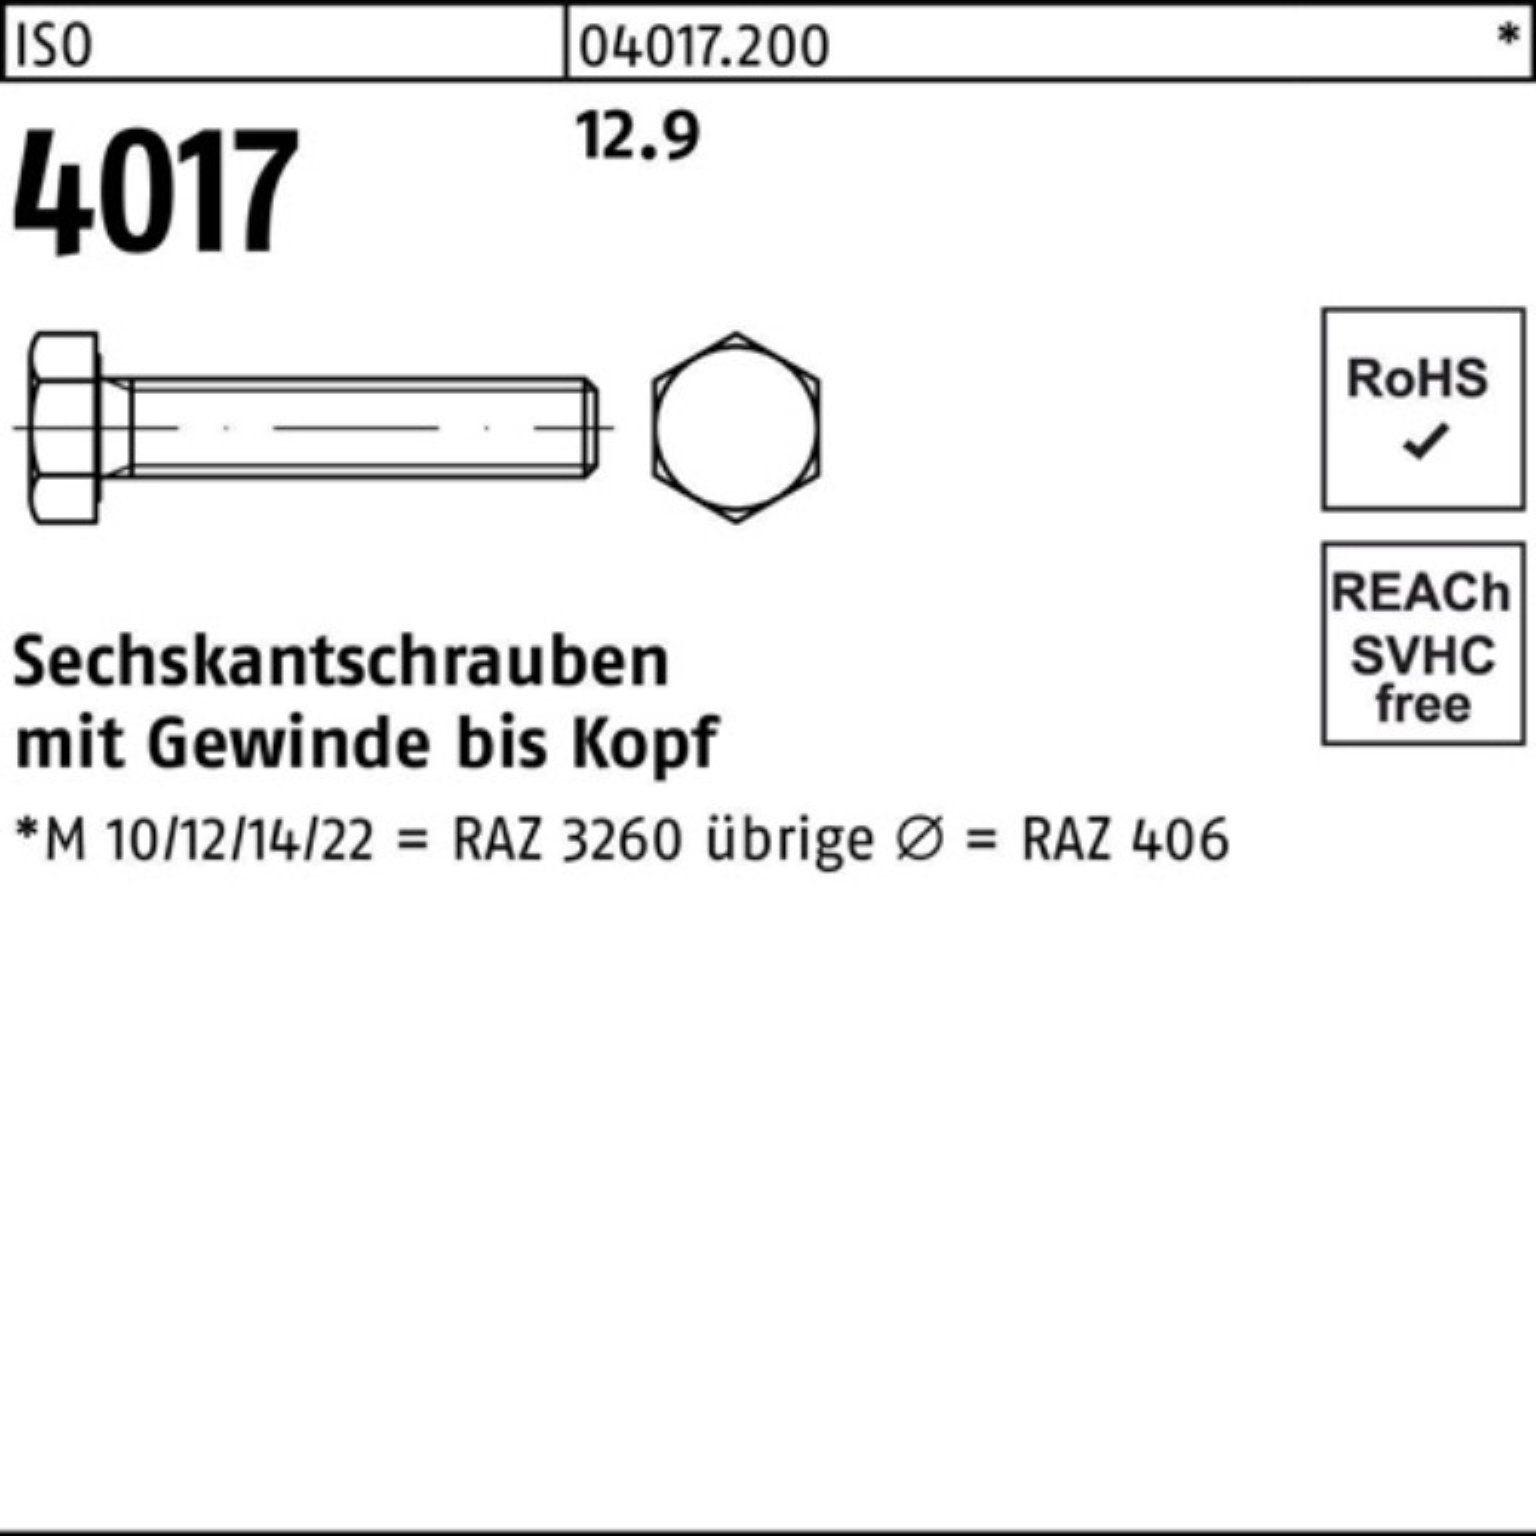 Sechskantschraube VG 50 M16x Stück Sechskantschraube 40 Pack Bufab ISO 100er ISO 40 12.9 4017